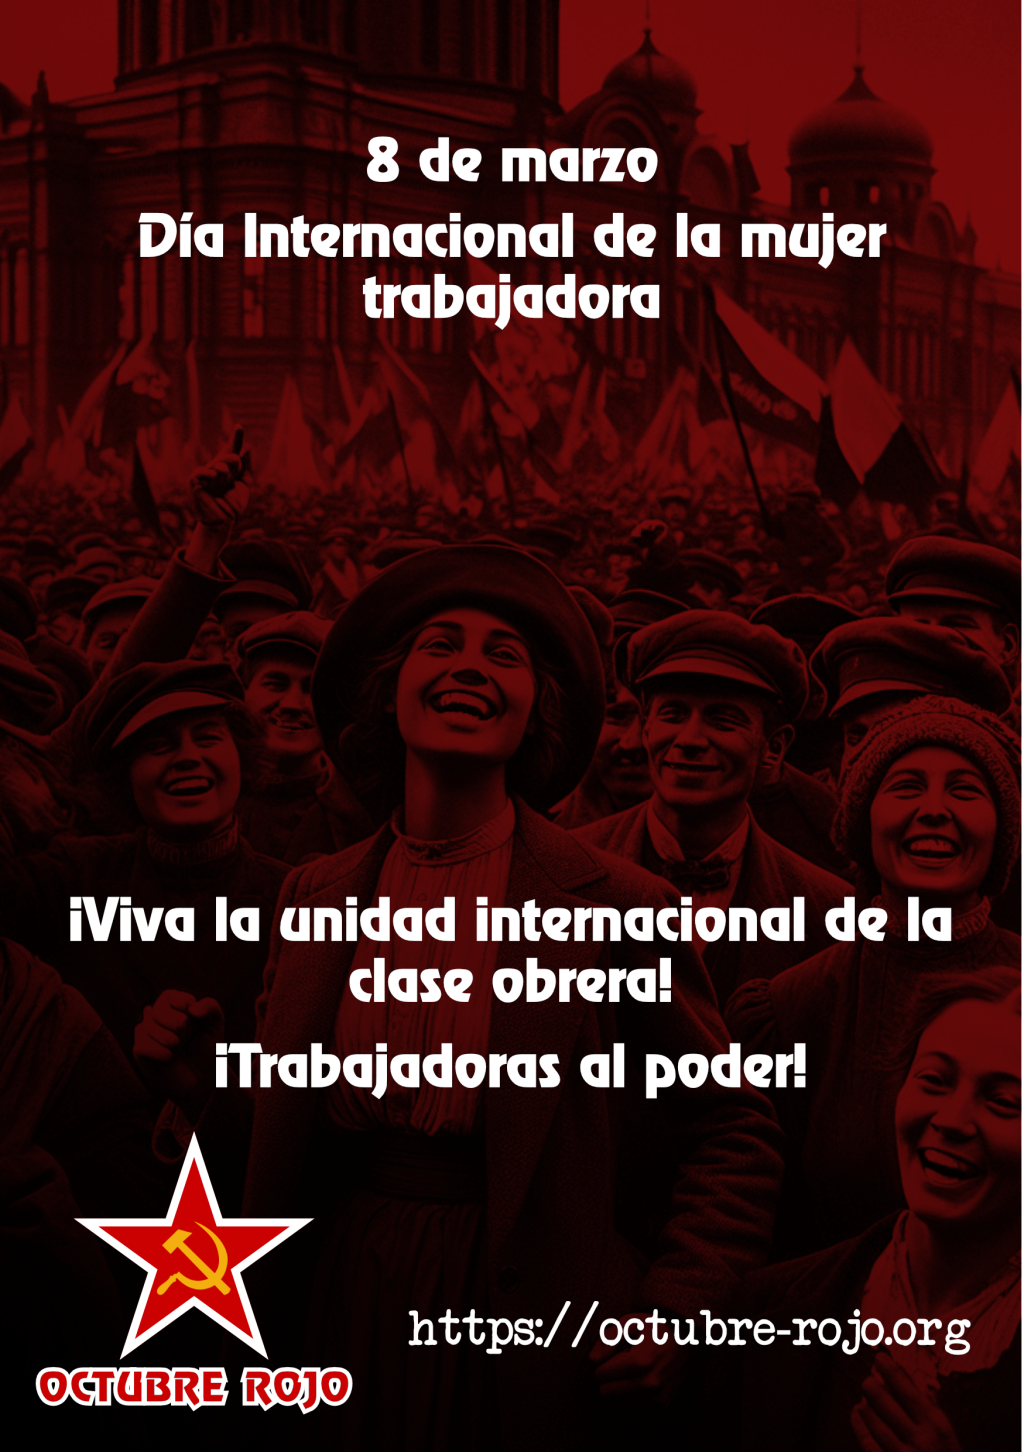 ¡Rumbo al 8 de marzo, vamos por la huelga mundial de la clase obrera!